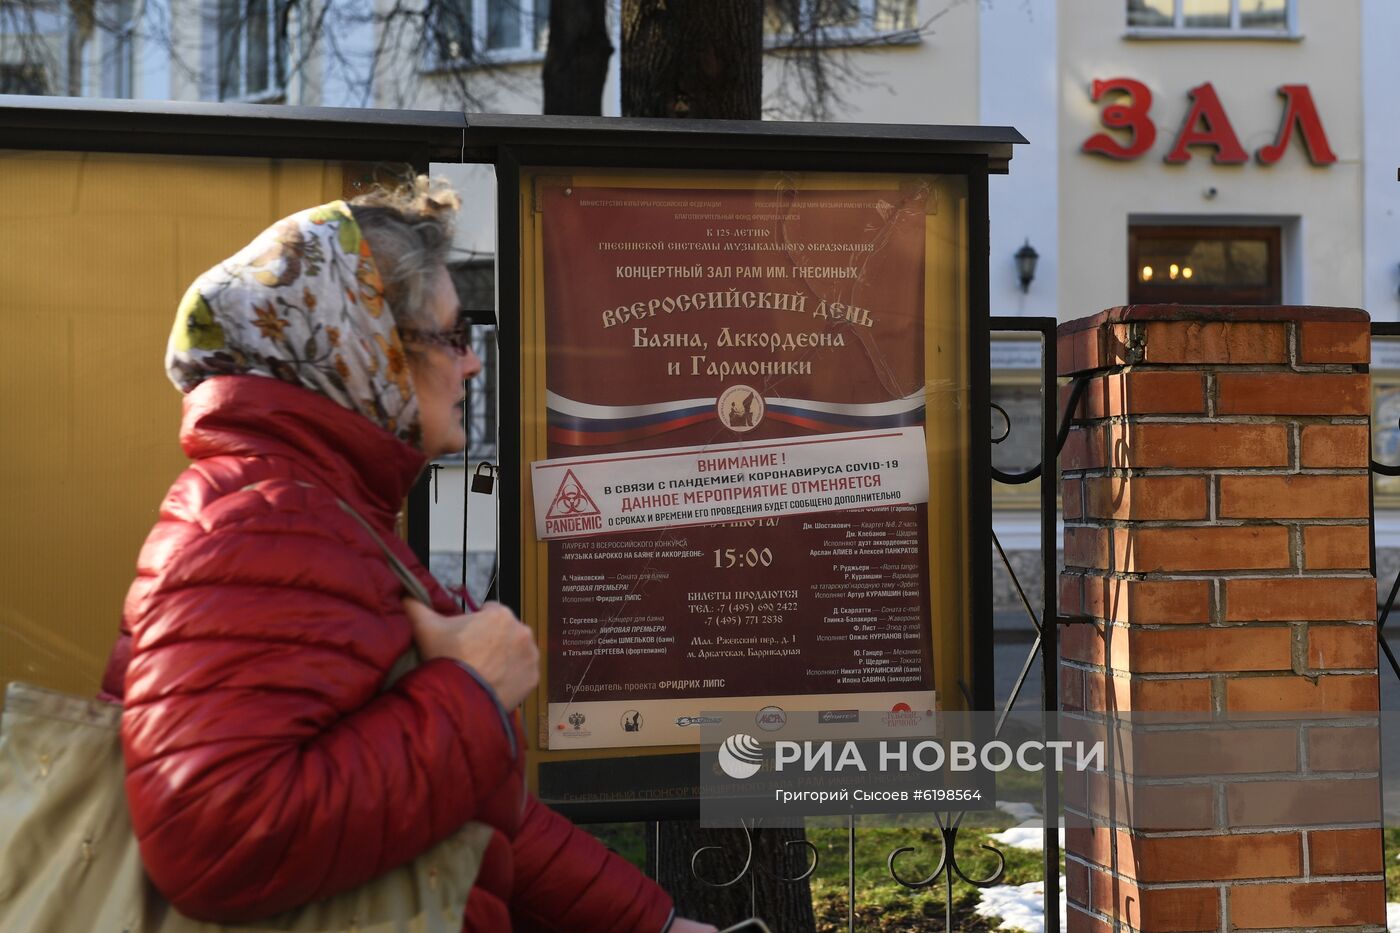 Московские театры закрыты в связи c коронавирусом